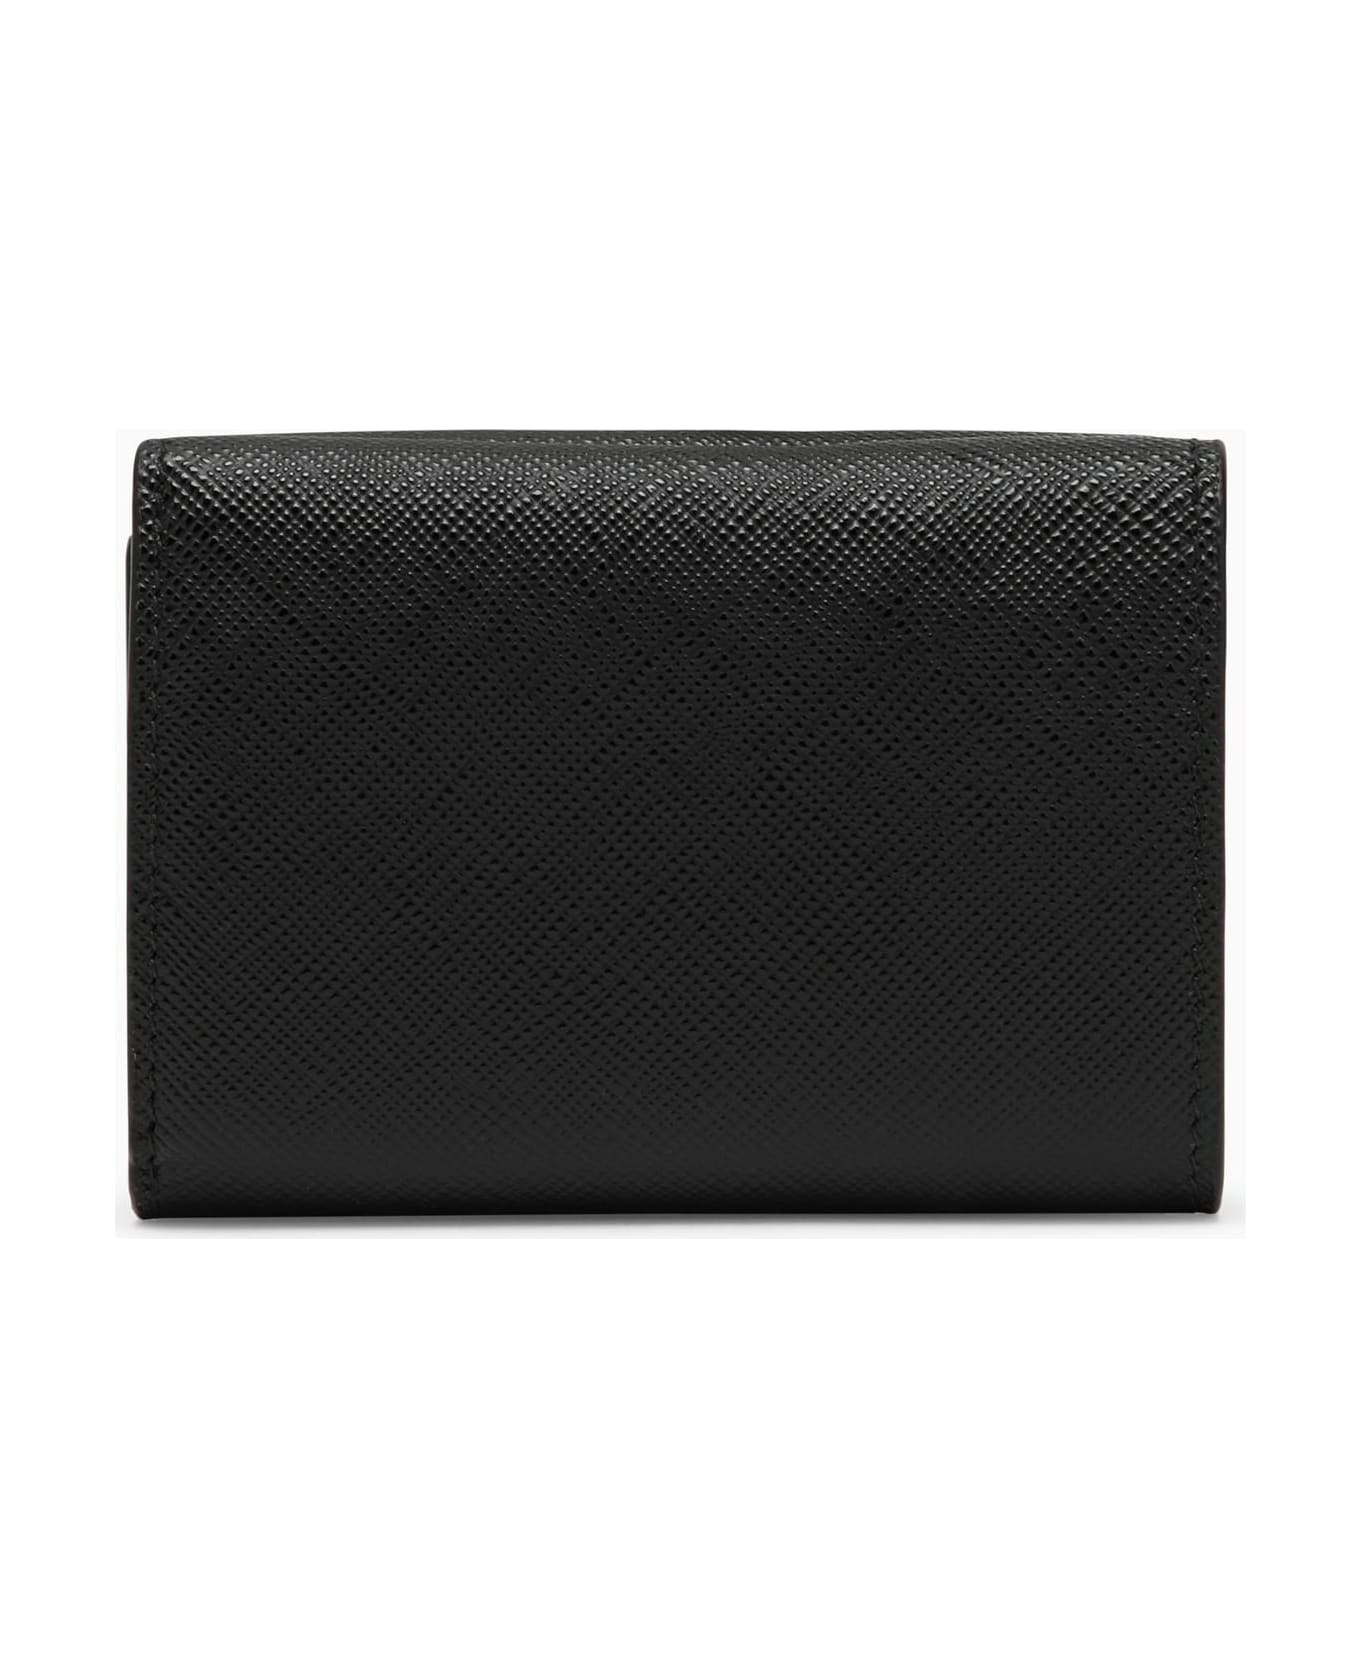 Prada Black Saffiano Leather Small Wallet - Nero